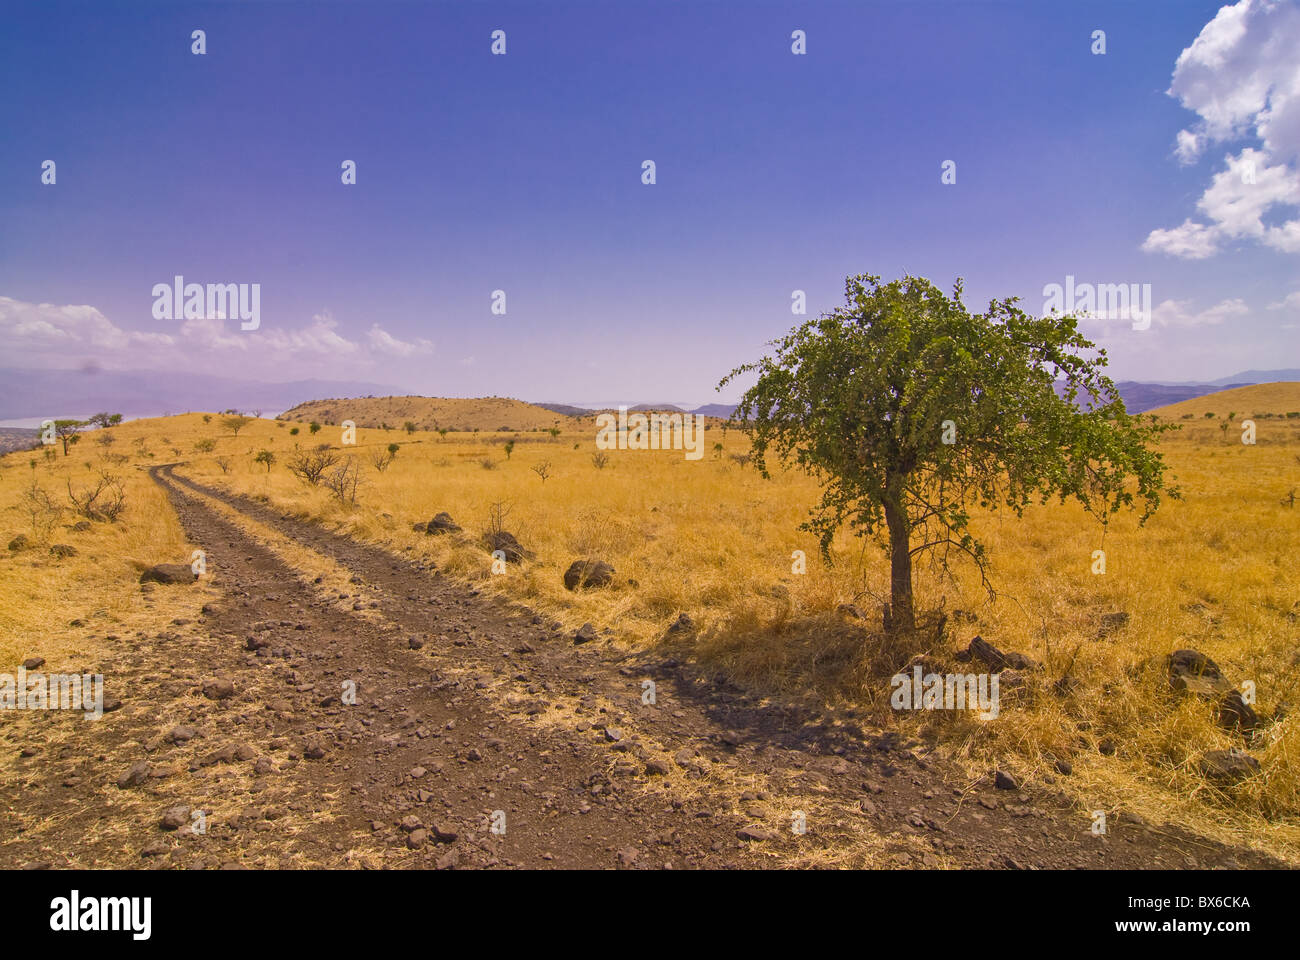 Route menant au parc national de Nechisar, Ethiopie, Afrique Banque D'Images